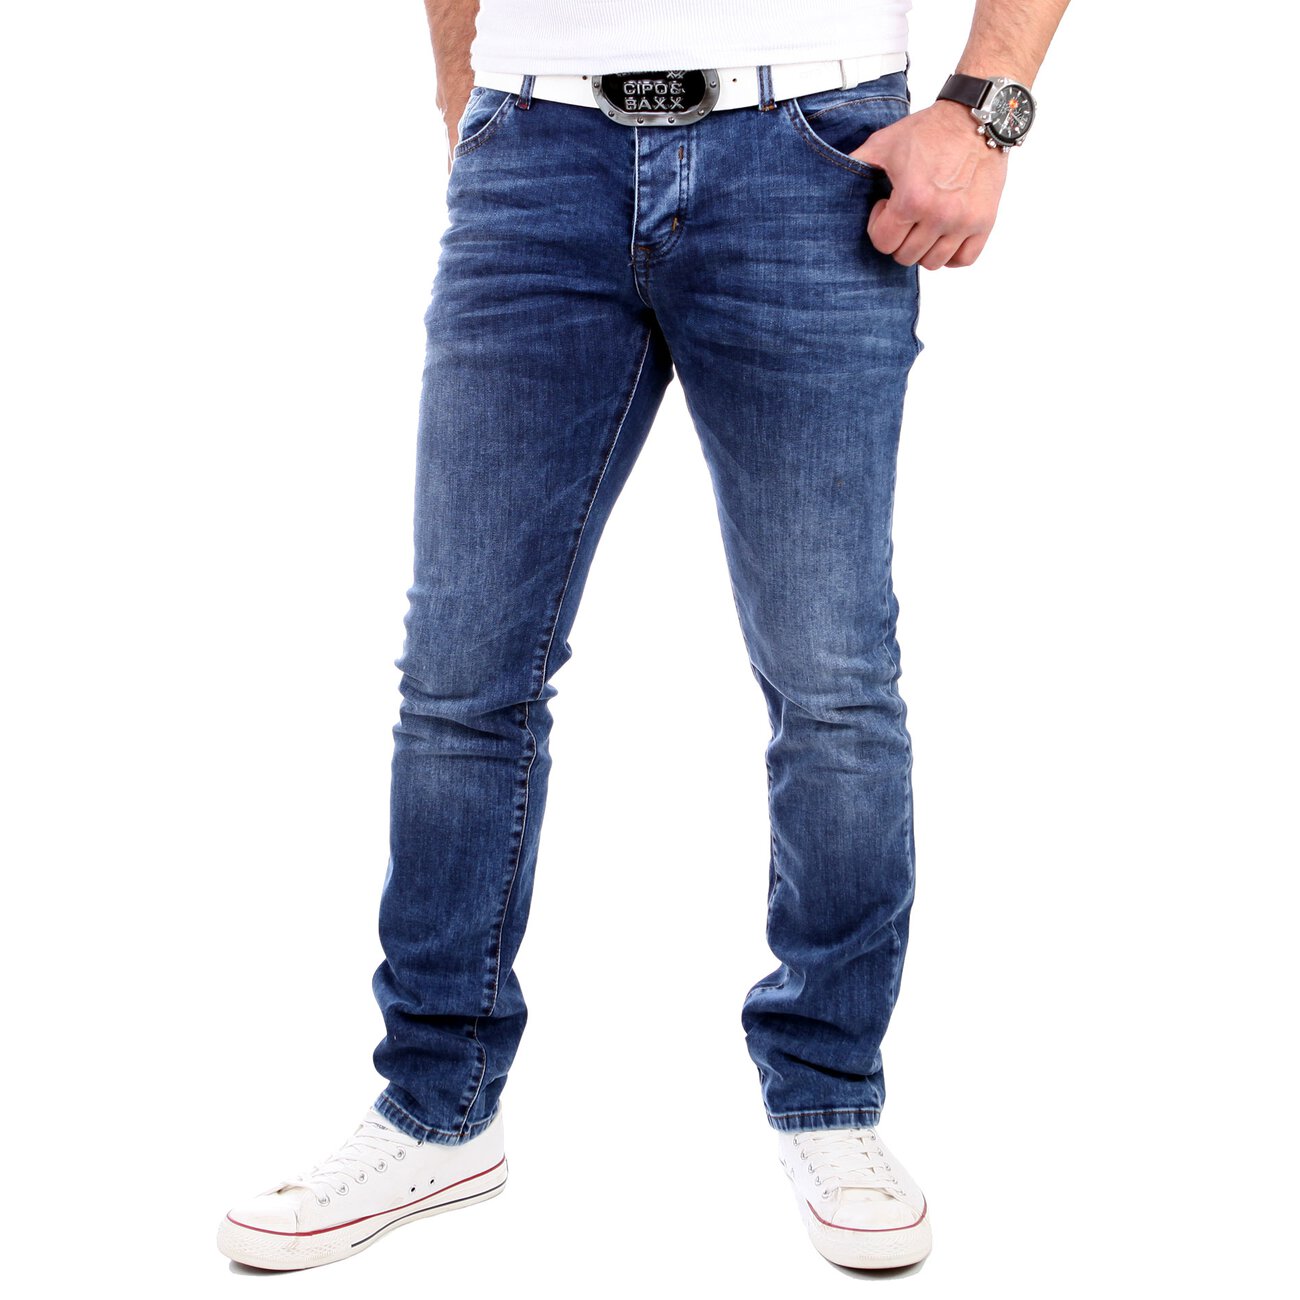 reslad-jeans-herren-slim-fit-light-bleached-5-pocket-jeans-hose-rs-2060-blau